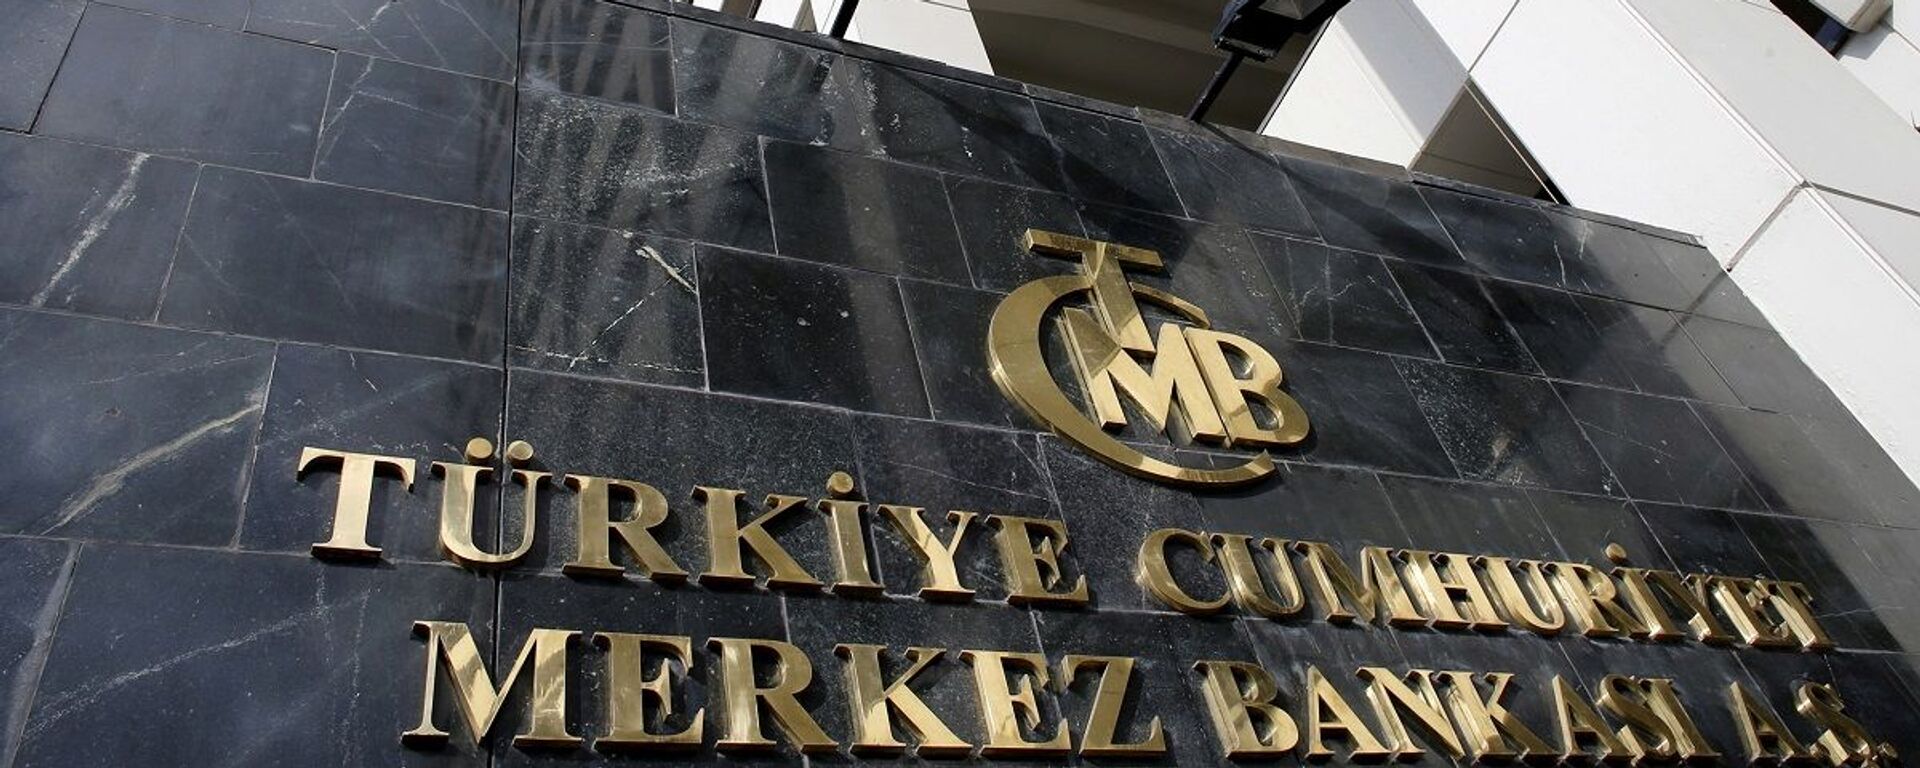 Merkez Bankası - Sputnik Türkiye, 1920, 25.11.2021